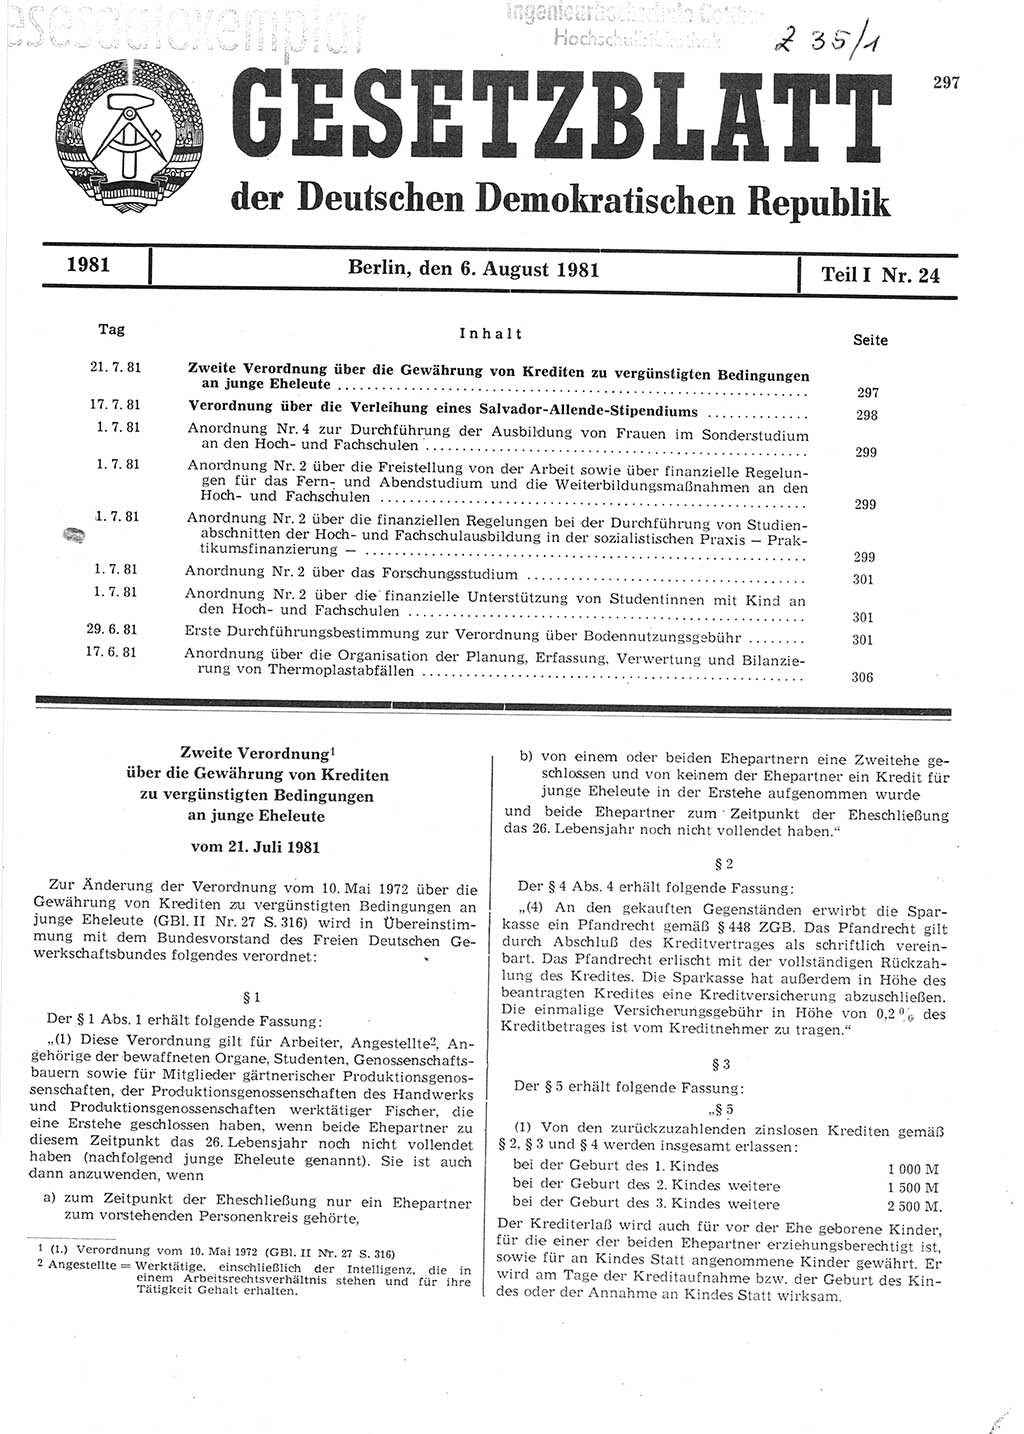 Gesetzblatt (GBl.) der Deutschen Demokratischen Republik (DDR) Teil Ⅰ 1981, Seite 297 (GBl. DDR Ⅰ 1981, S. 297)